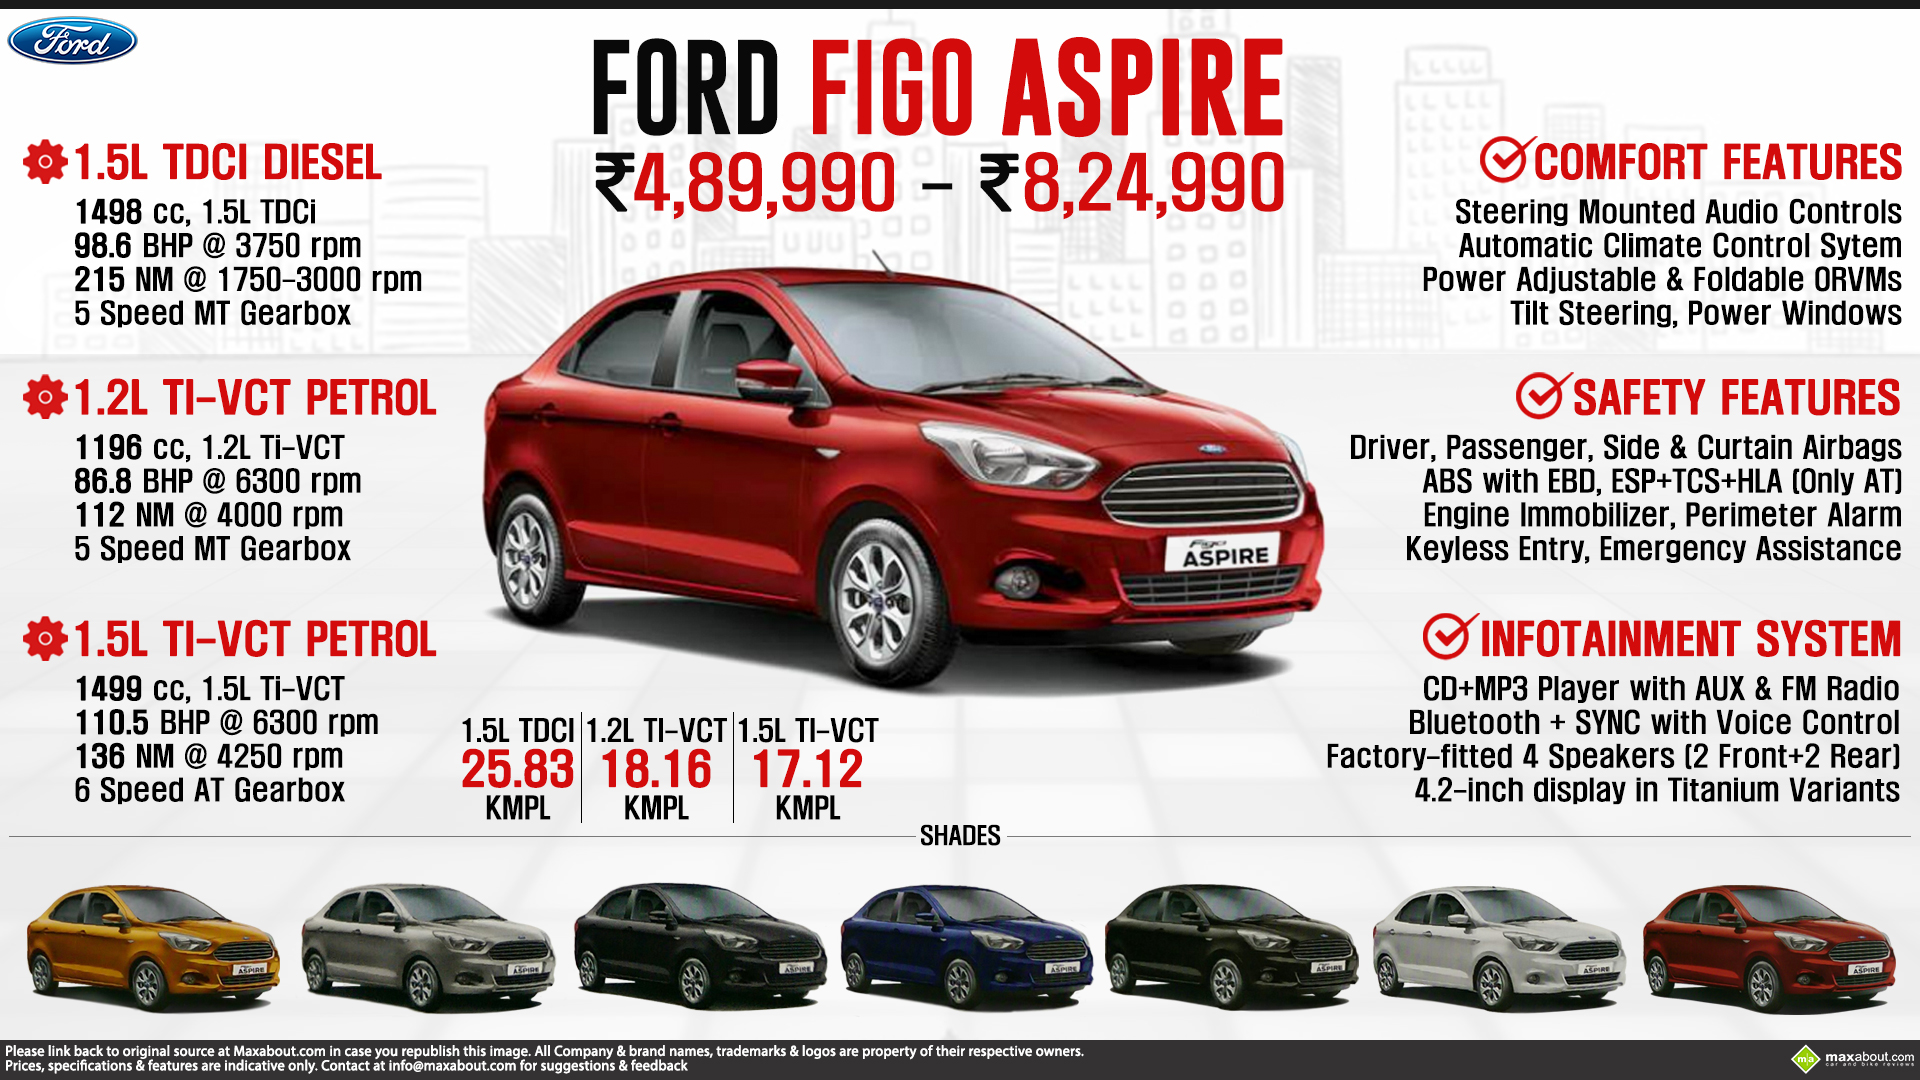 Ford Figo Aspire - What Drives You?